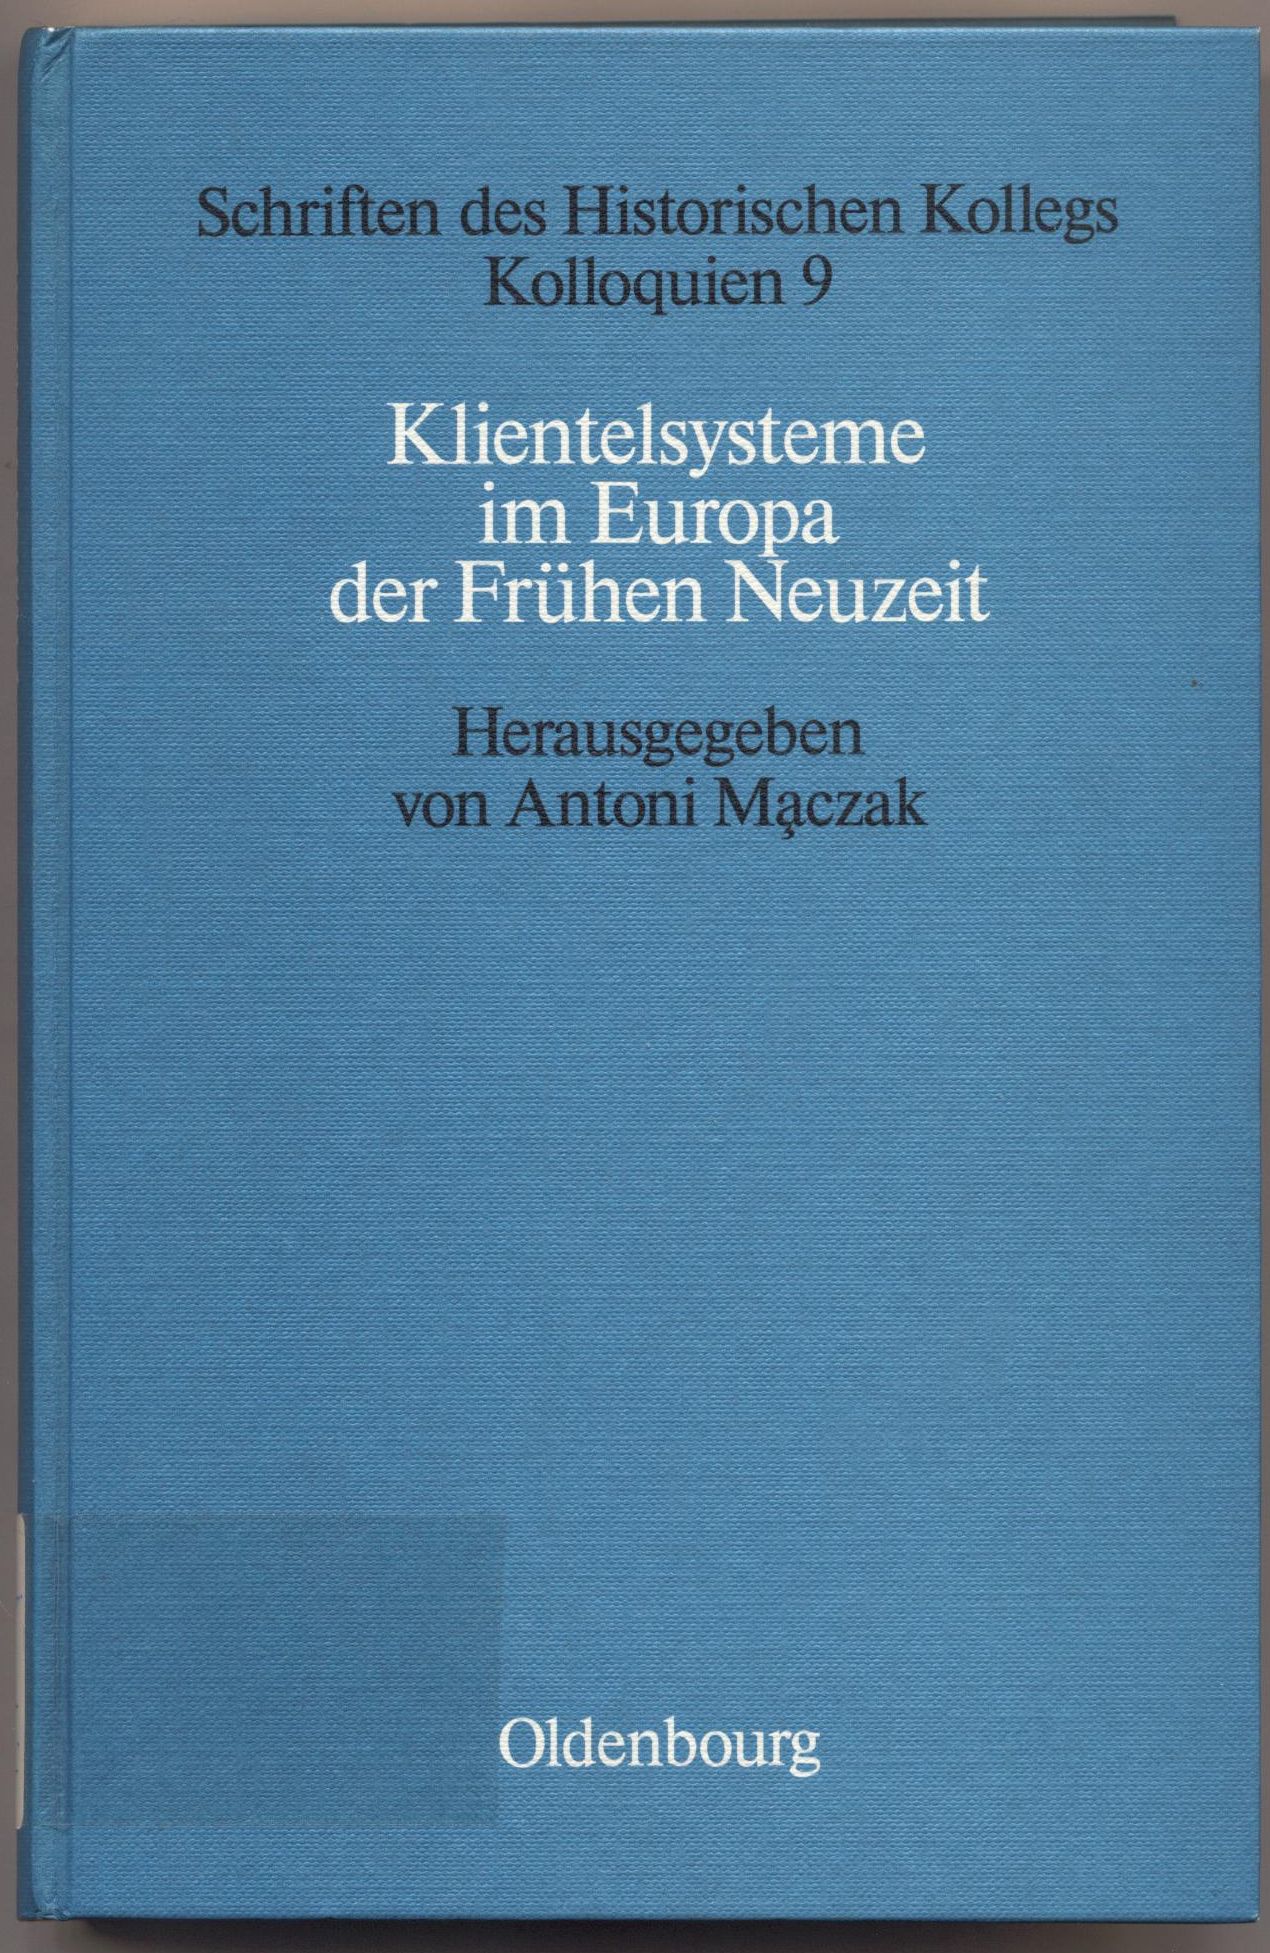 Klientelsysteme im Europa der Frühen Neuzeit - Maczak, Antoni und Elisabeth Müller-Luckner